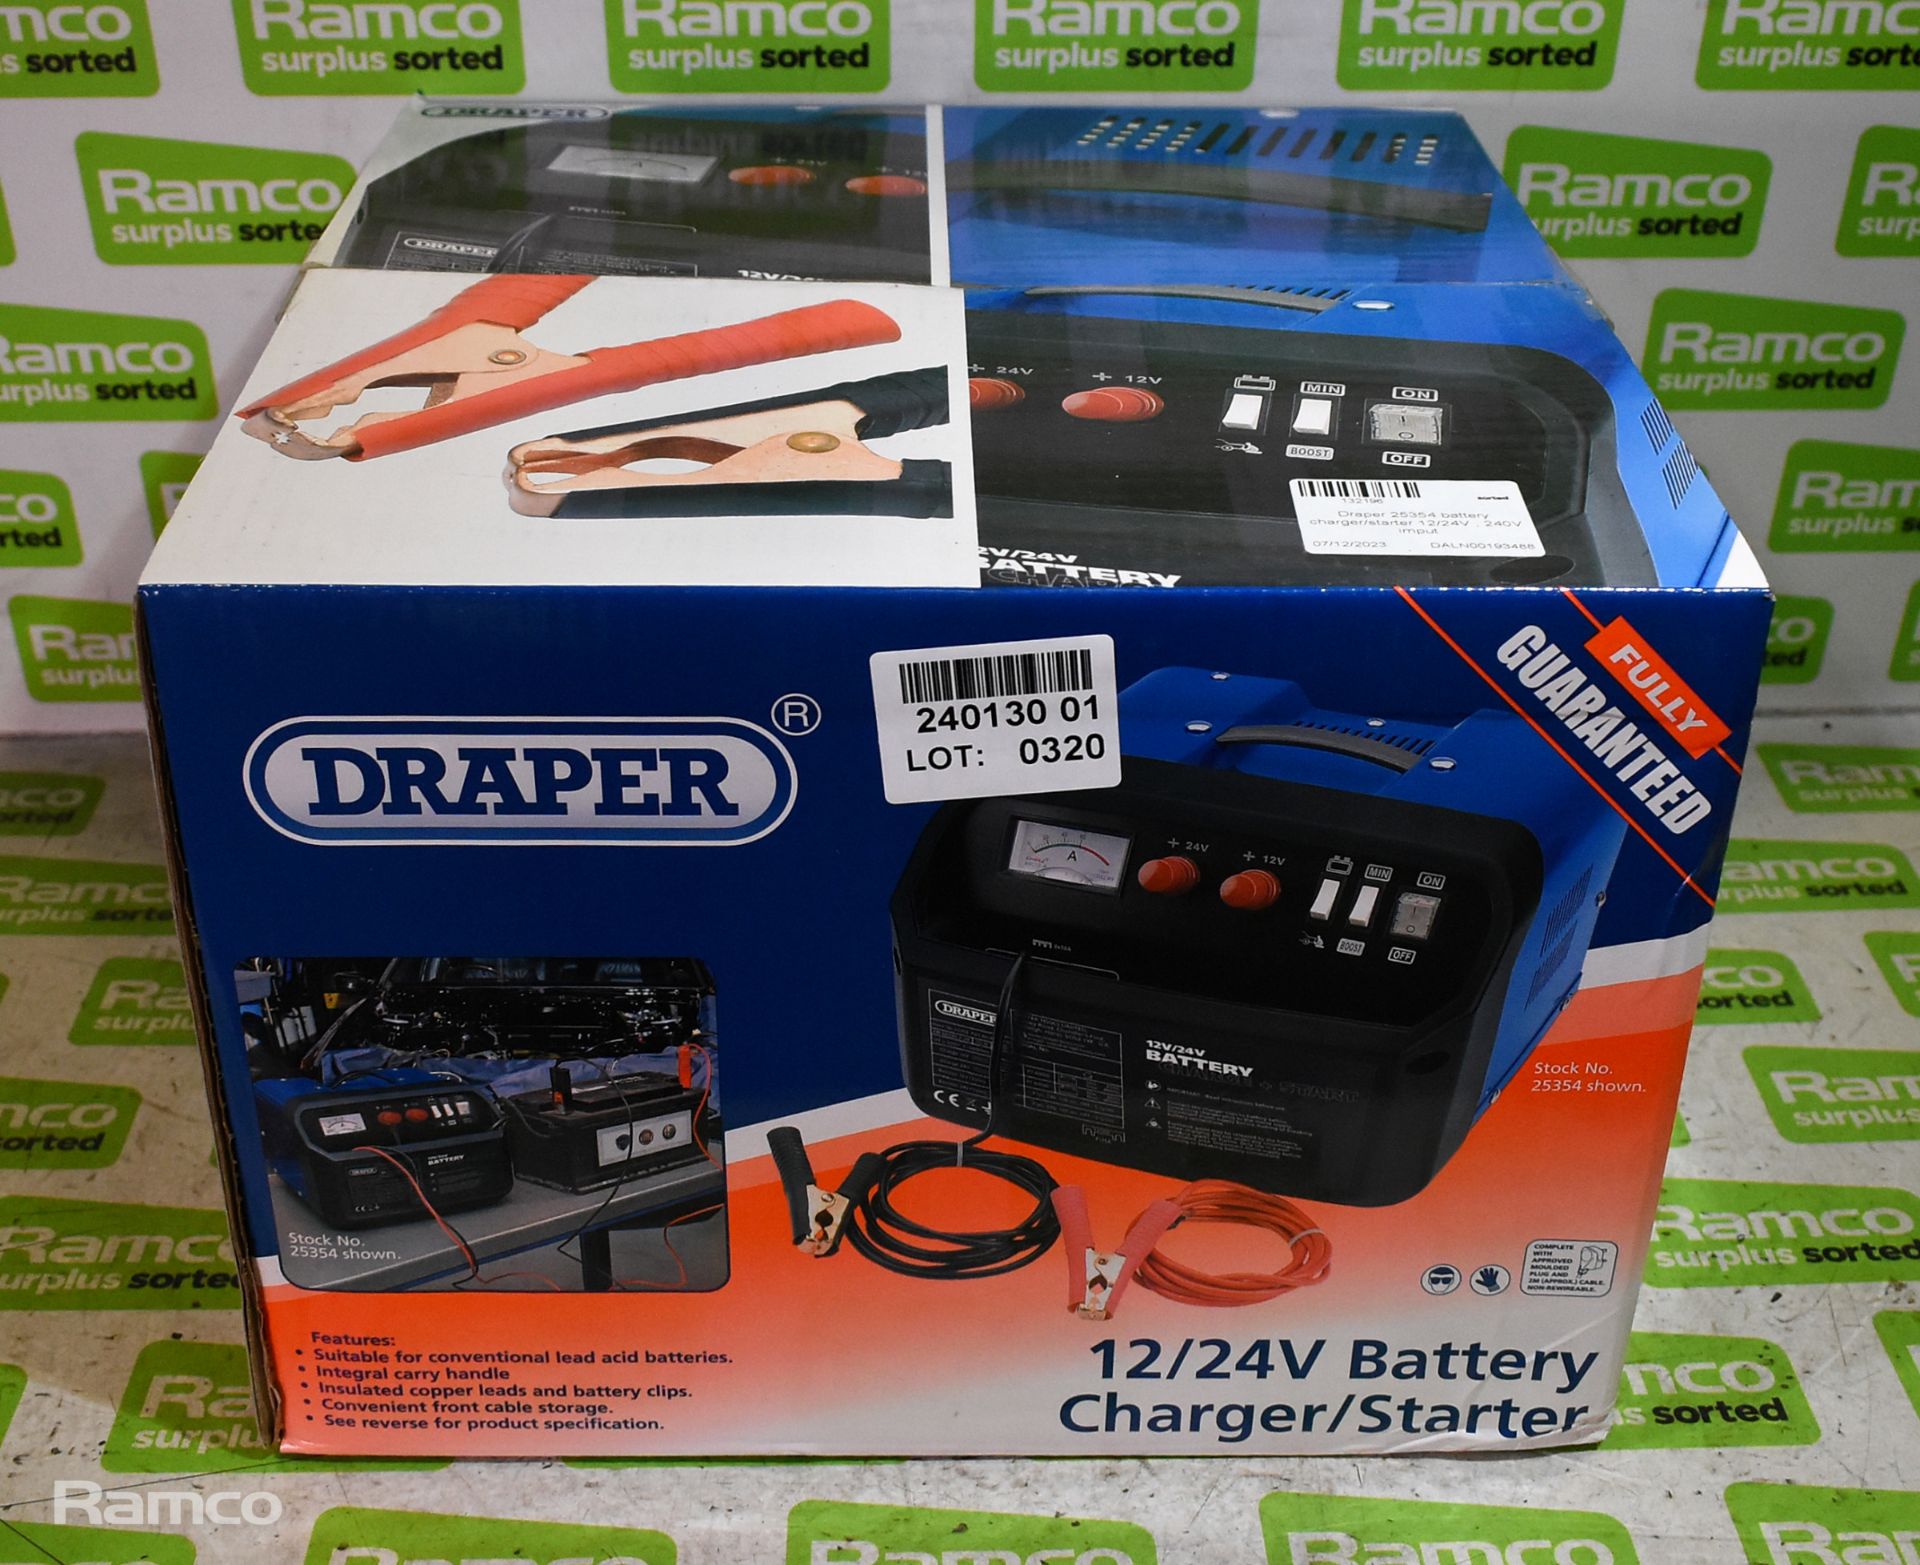 Draper 25354 battery charger / starter 12 / 24V - 240V input - Image 2 of 2